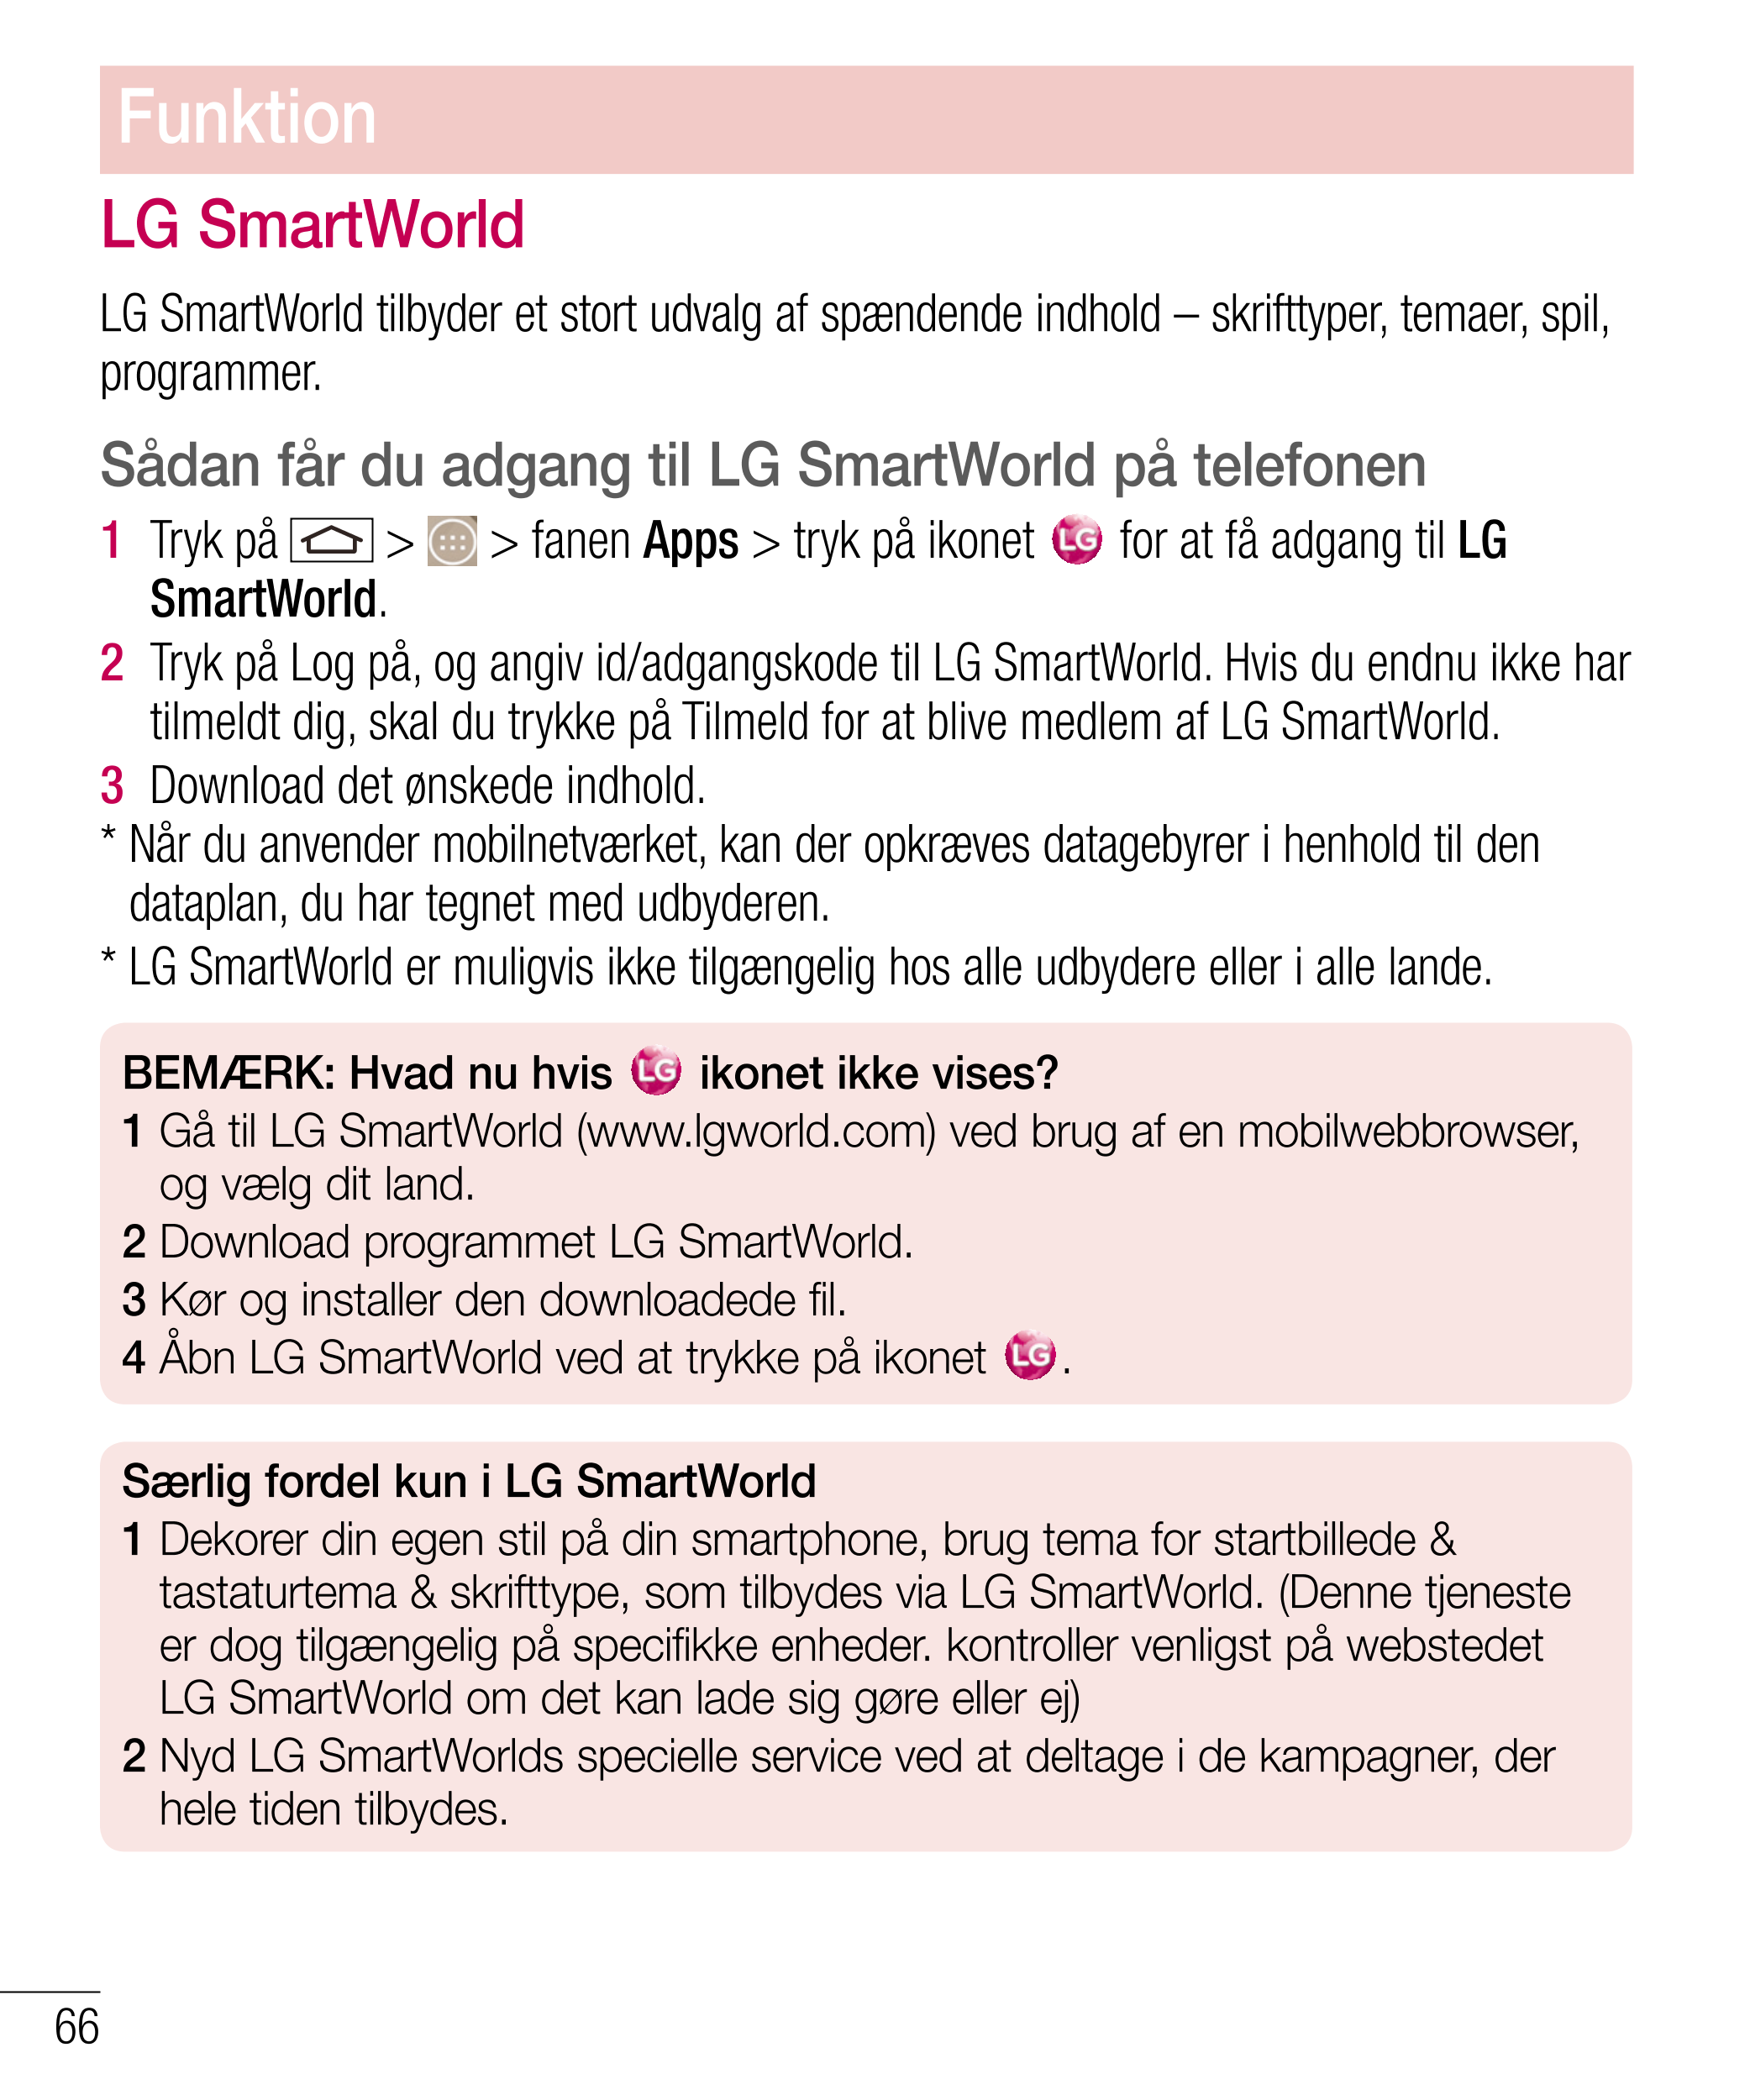 Funktion
LG SmartWorld
LG SmartWorld tilbyder et stort udvalg af spændende indhold – skrifttyper, temaer, spil, 
programmer.
Såd